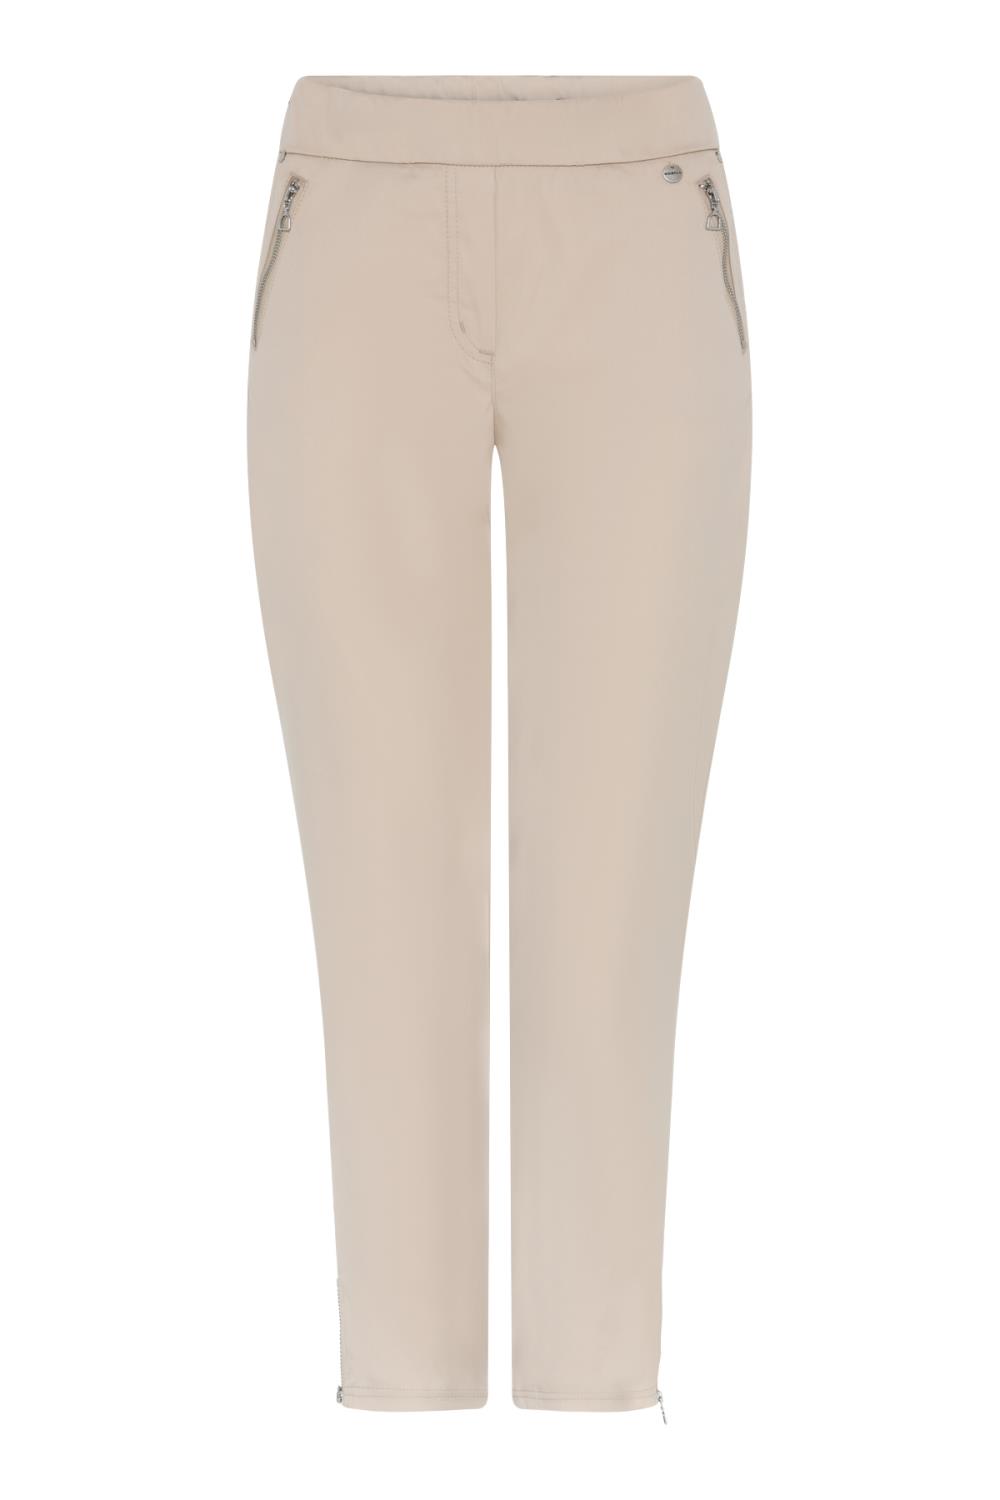 Robell Nena bukse, 68 cm, beige